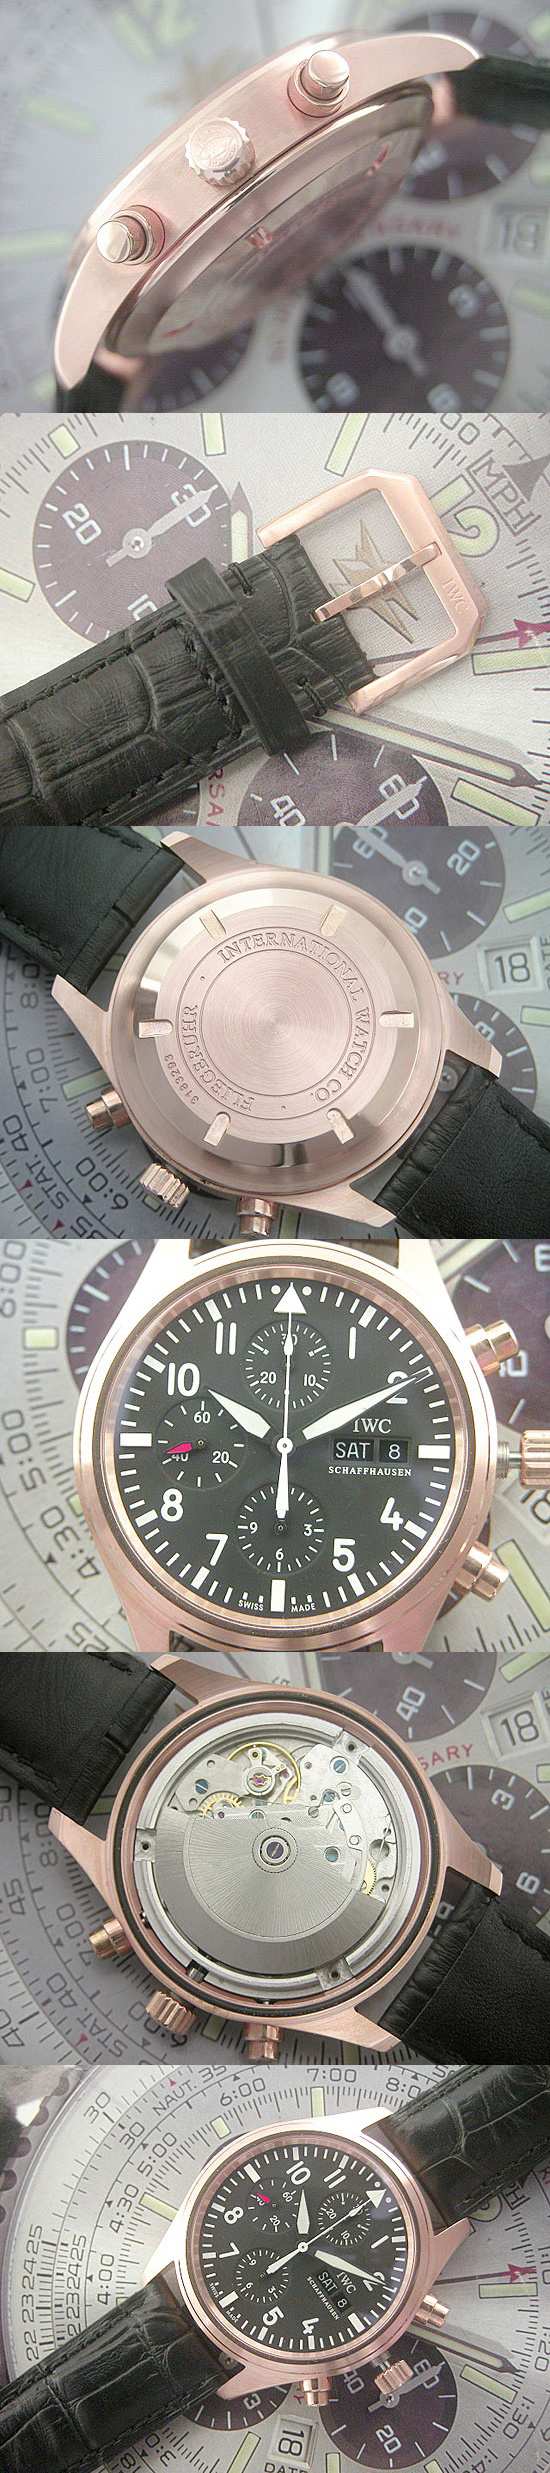 おしゃれなブランド時計がIWC-パイロット-IWC-IW371713-af-男性用を提供します.